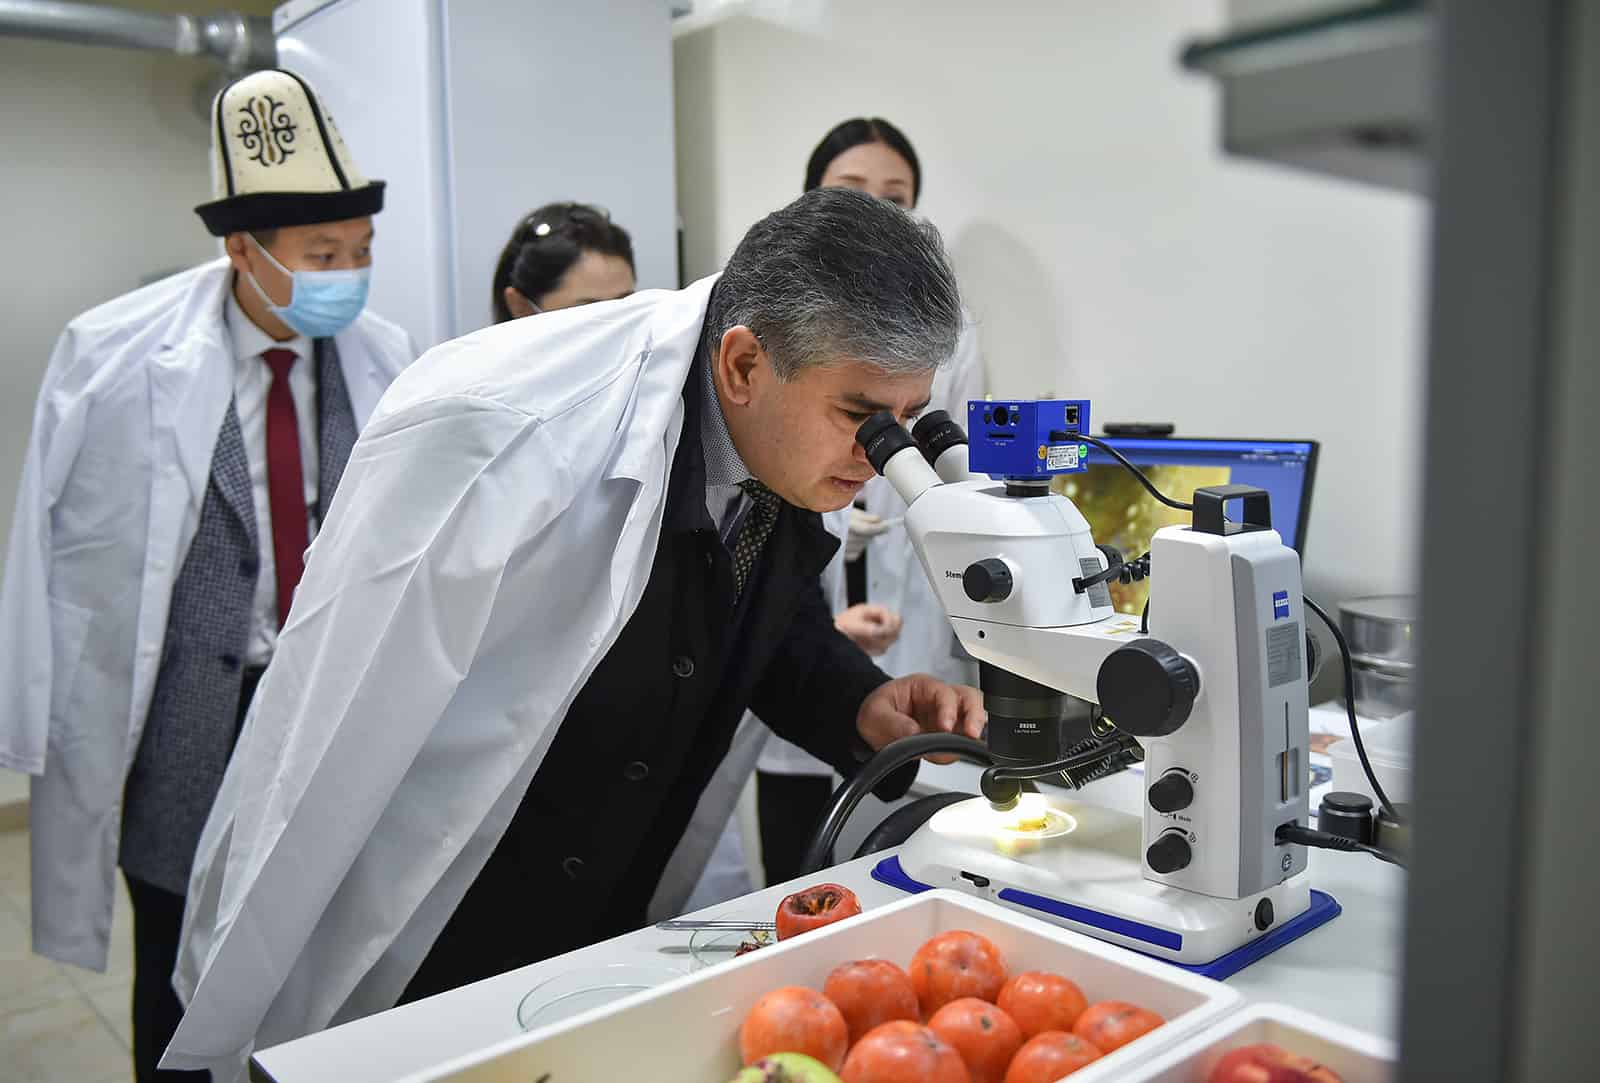 Развитие лабораторий позволит беспрепятственно экспортировать сельхозпродукцию — вице-премьер